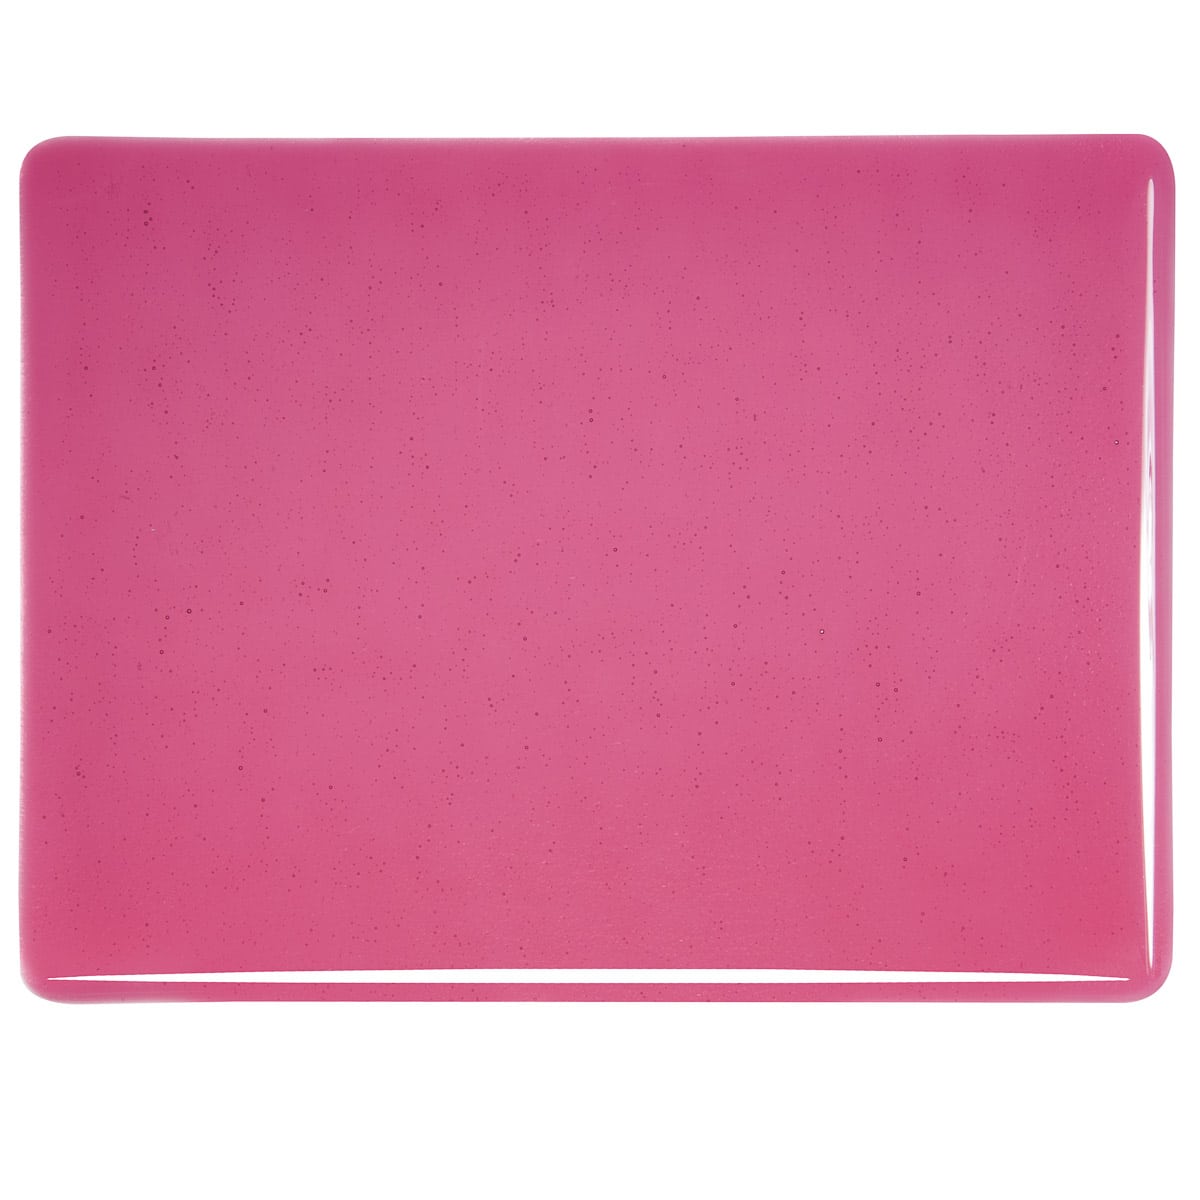 Light Pink Transparent sheet glass swatch